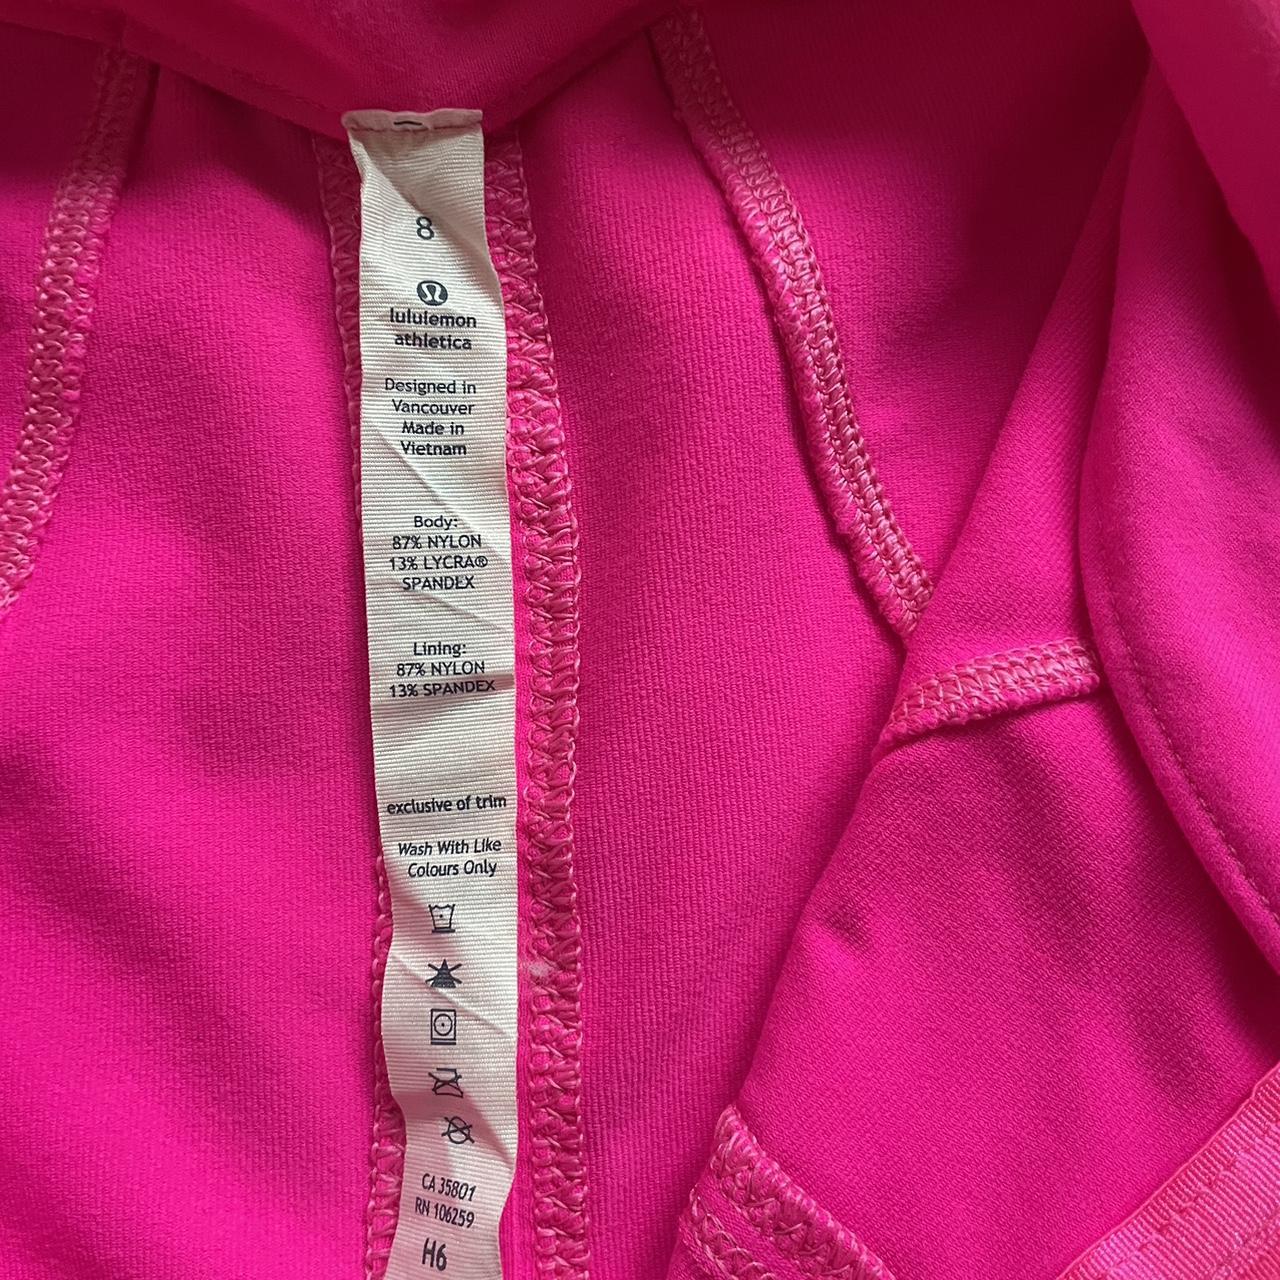 Lulu lemon define jacket Sonic pink Size 8 Worn... - Depop